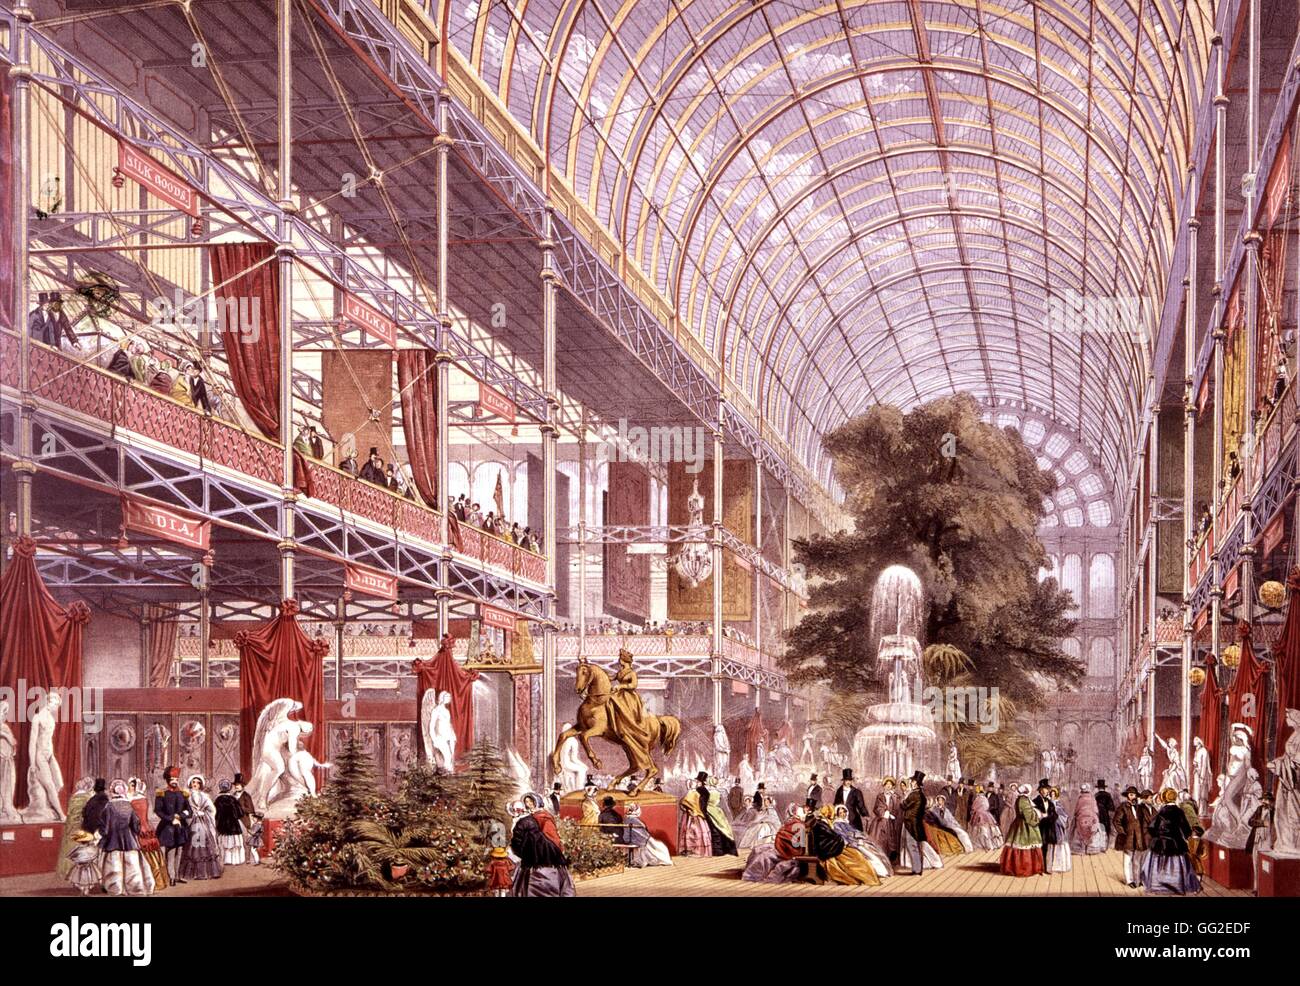 La reine Victoria et le Prince Albert l'inauguration de la grande exposition de 1851. Le Palais de Cristal (détail) 1851 Angleterre Londres, Victoria and Albert Museum Banque D'Images